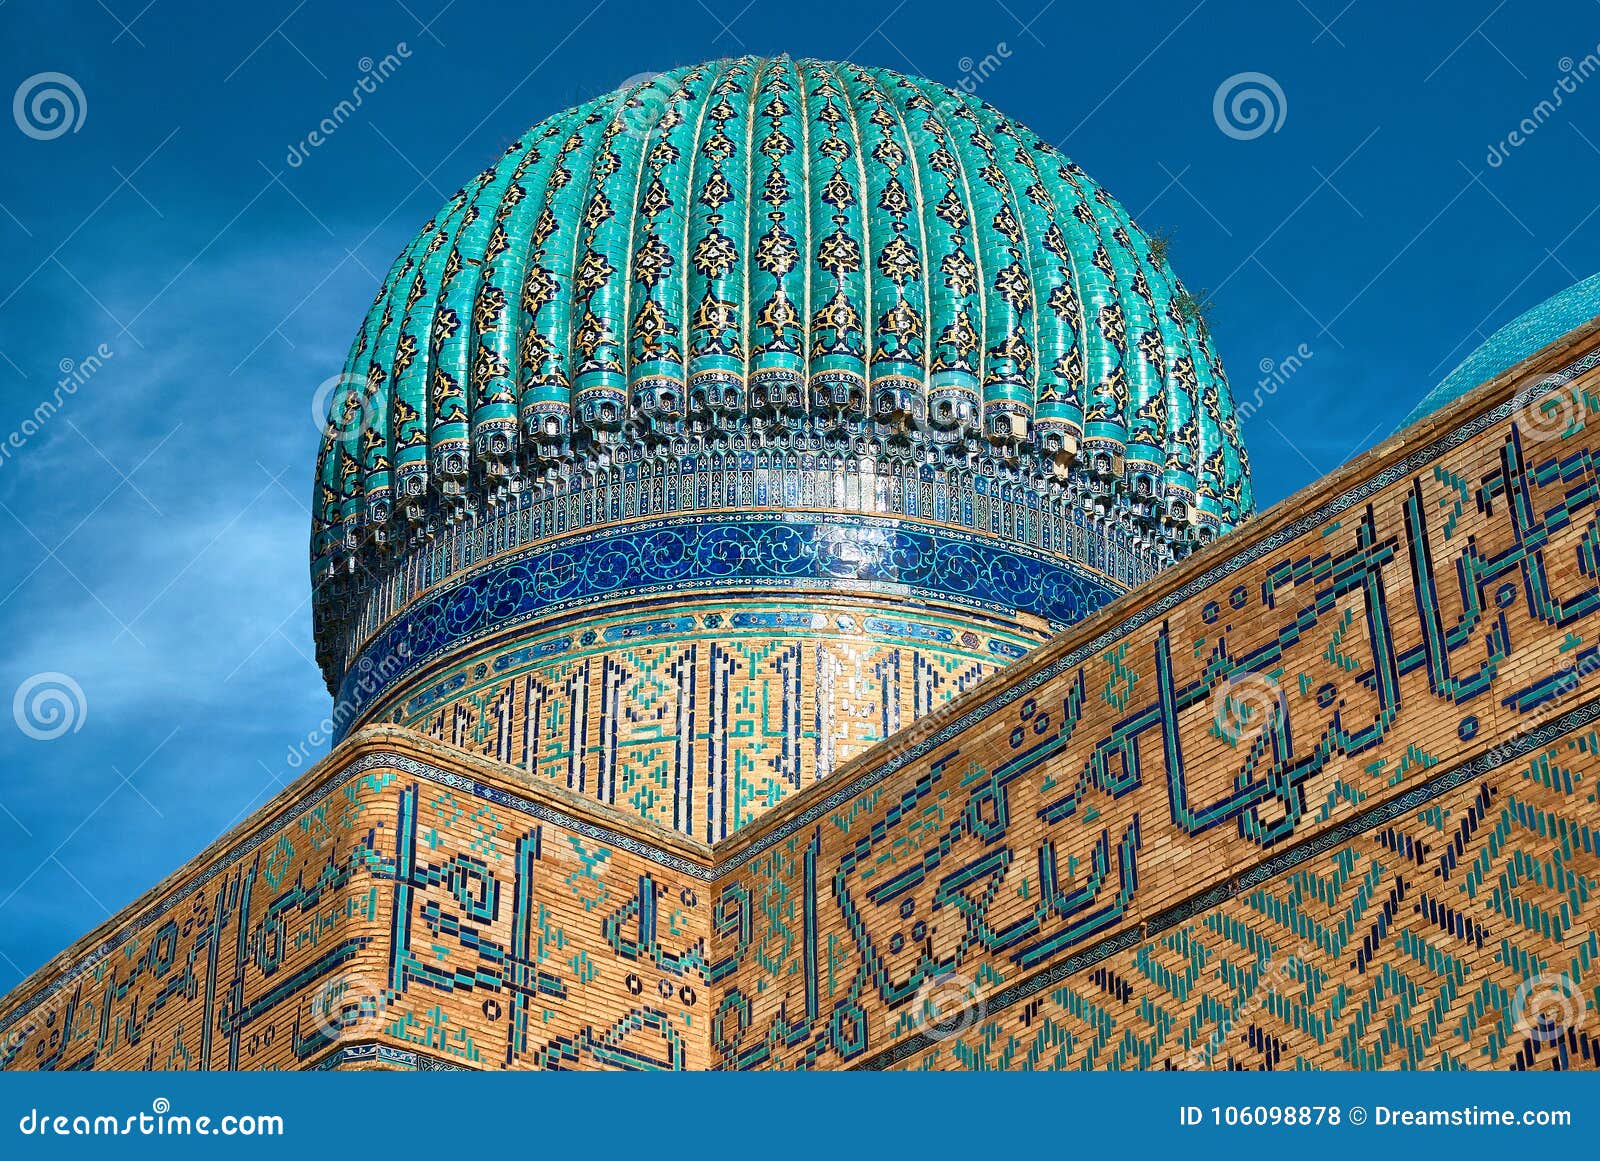 mausoleum of khoja ahmed yasawi, turkestan, kazakhstan